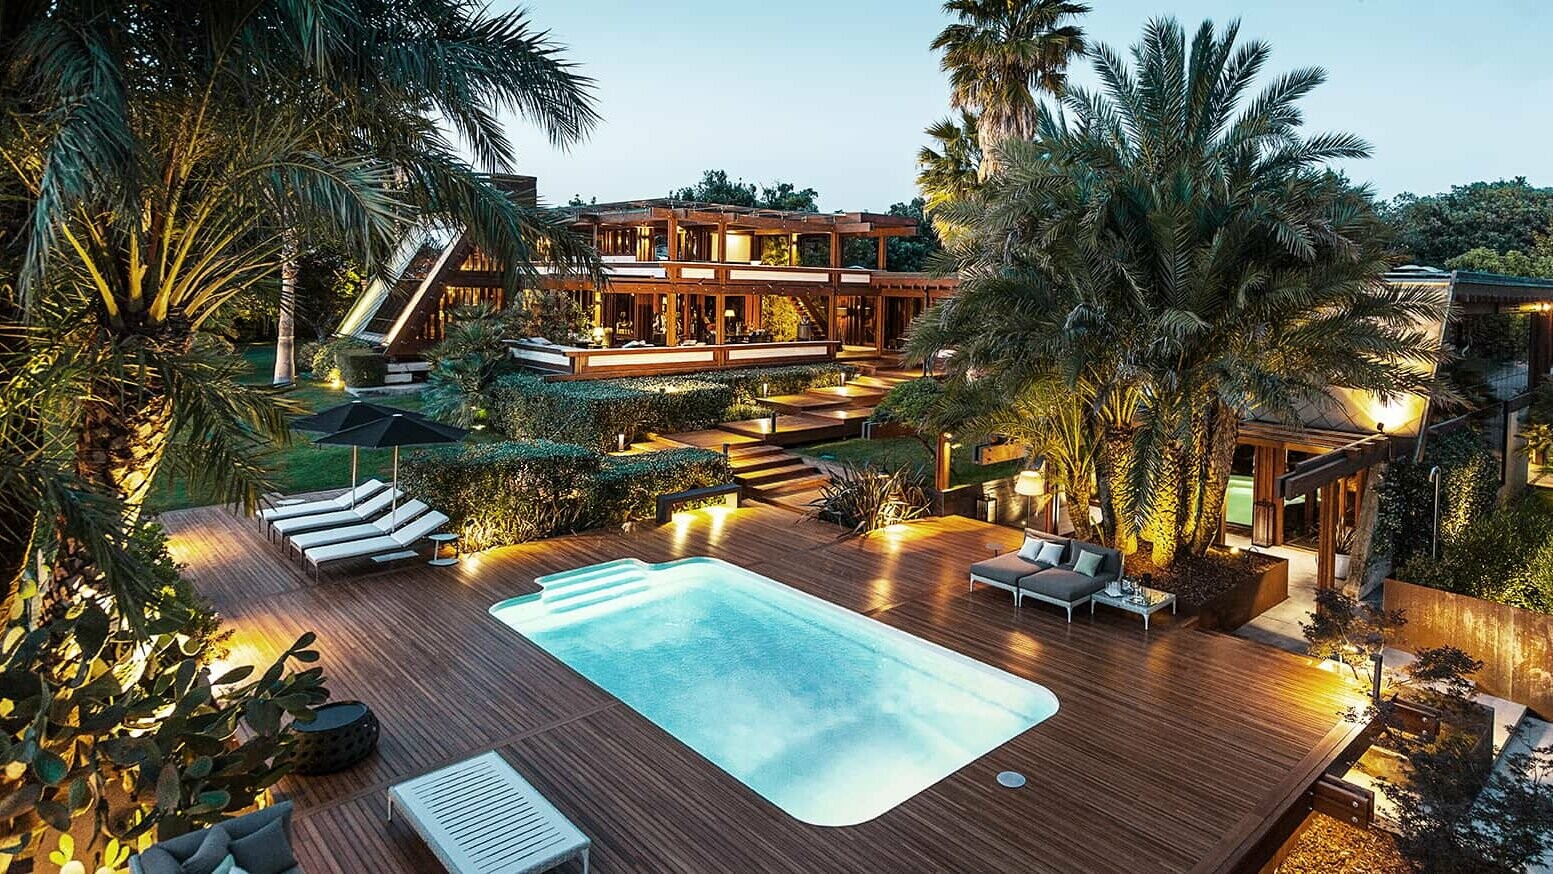 Weitwinkelansicht der Pagano-Anlage mit Pool und bequemen Liegeflächen. Palmen und indirektes Licht verleihen dem Ganzen ein luxuriöses Flair.